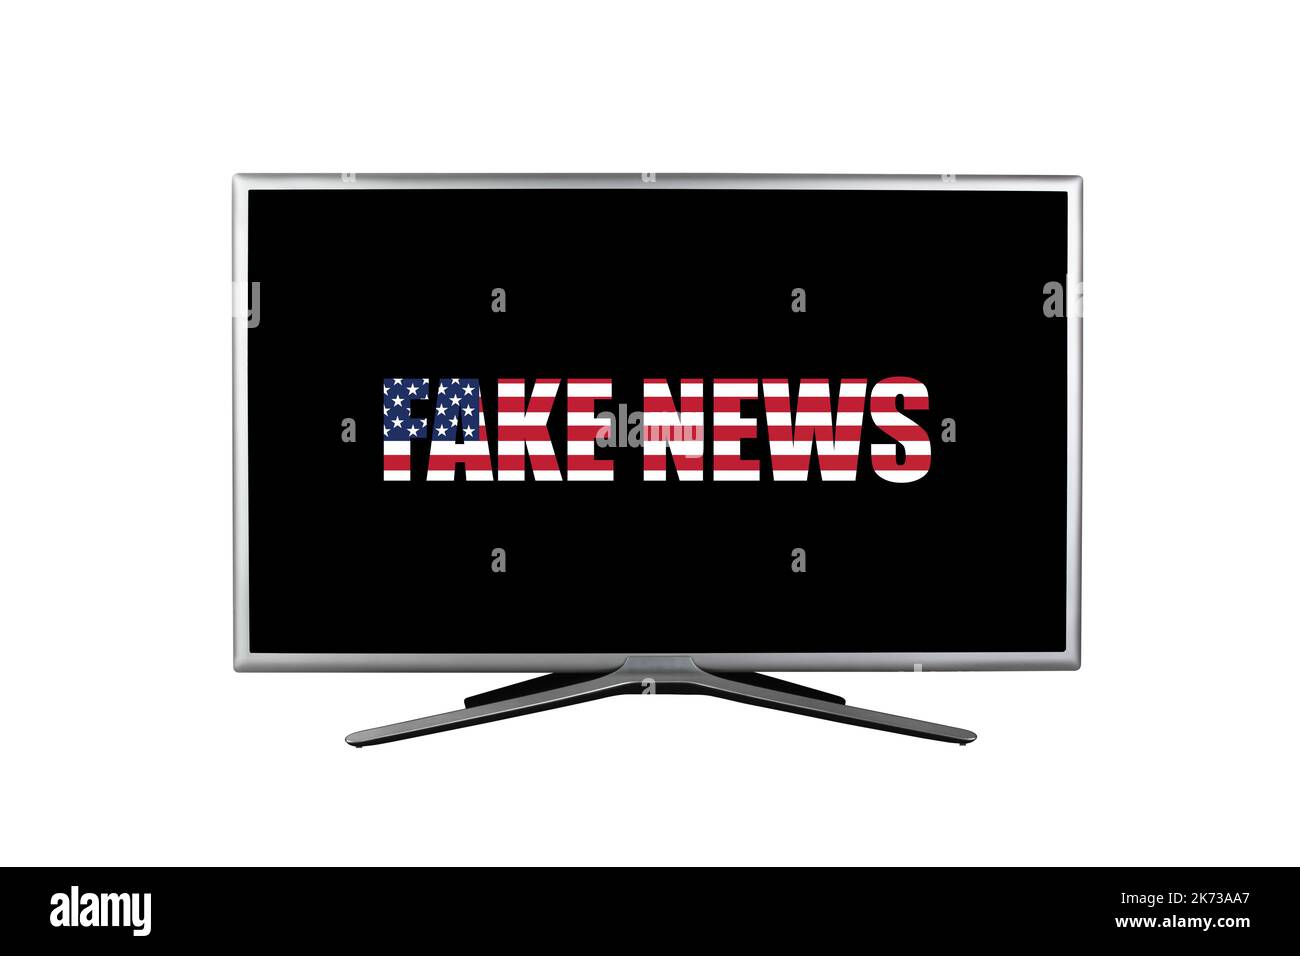 L'inscription fake news dans les couleurs du drapeau américain sur un écran de télévision noir isolé sur un fond blanc Banque D'Images